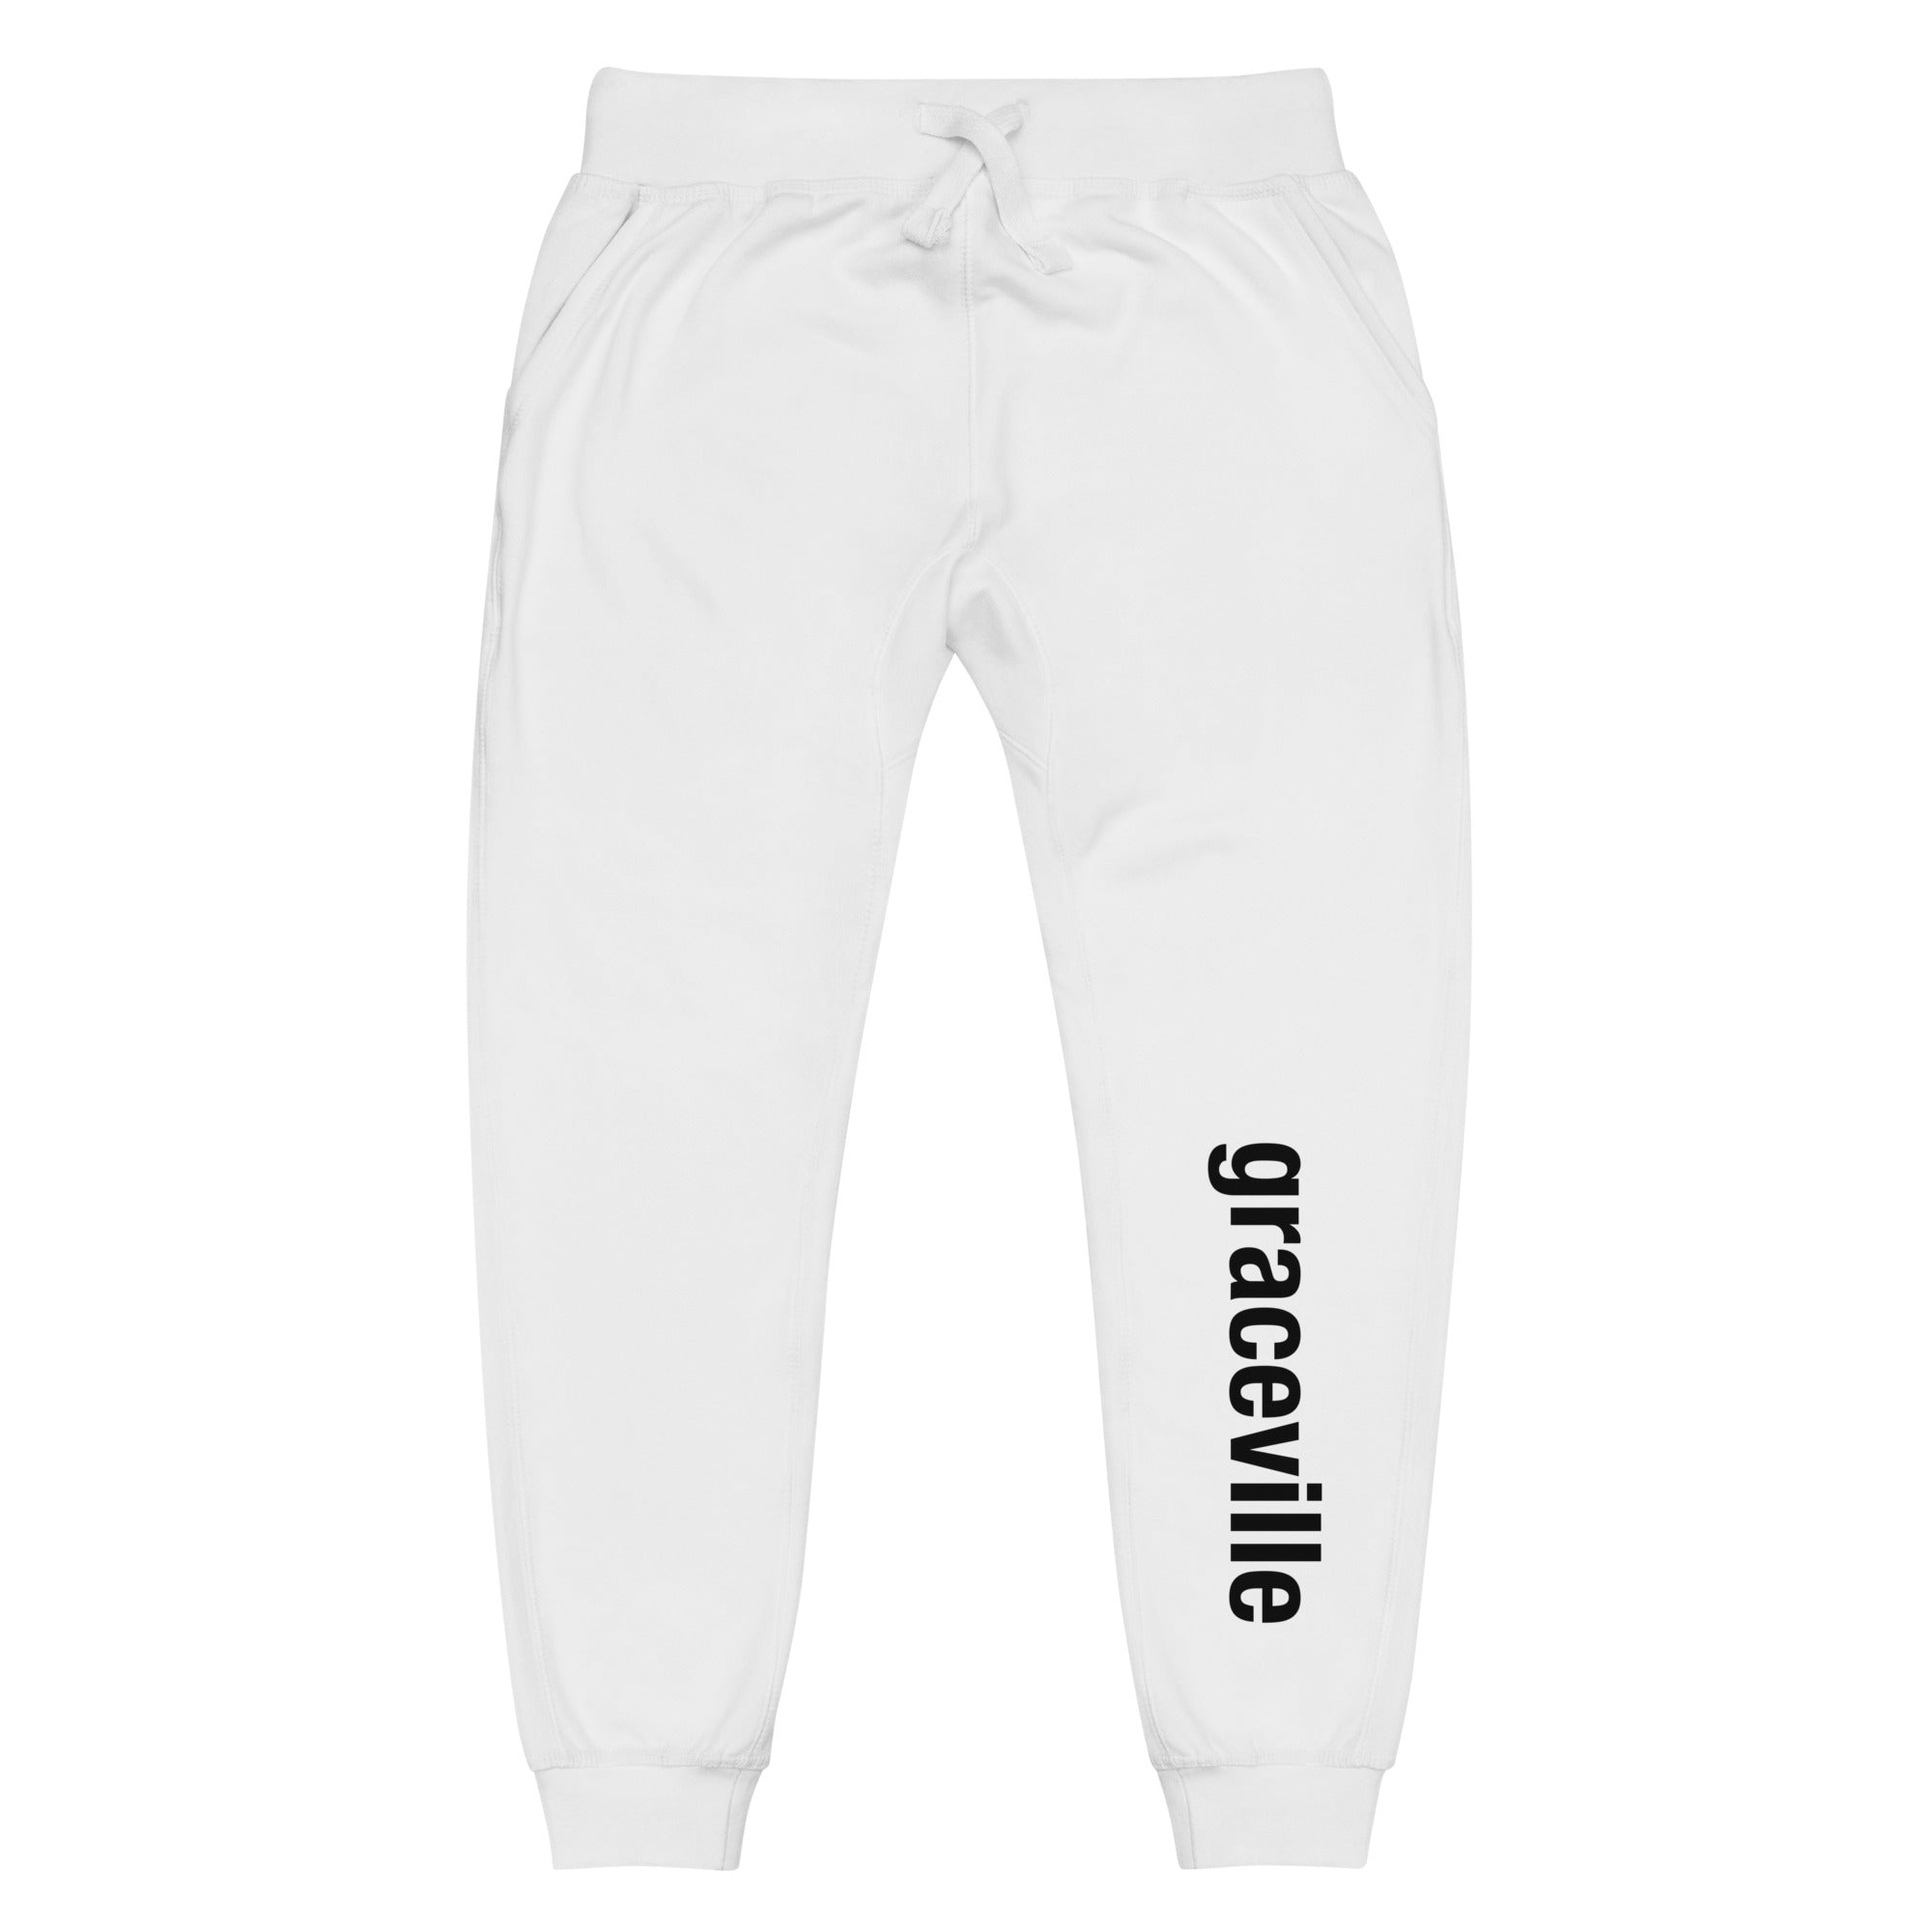 Graceville Sweatpants (White)